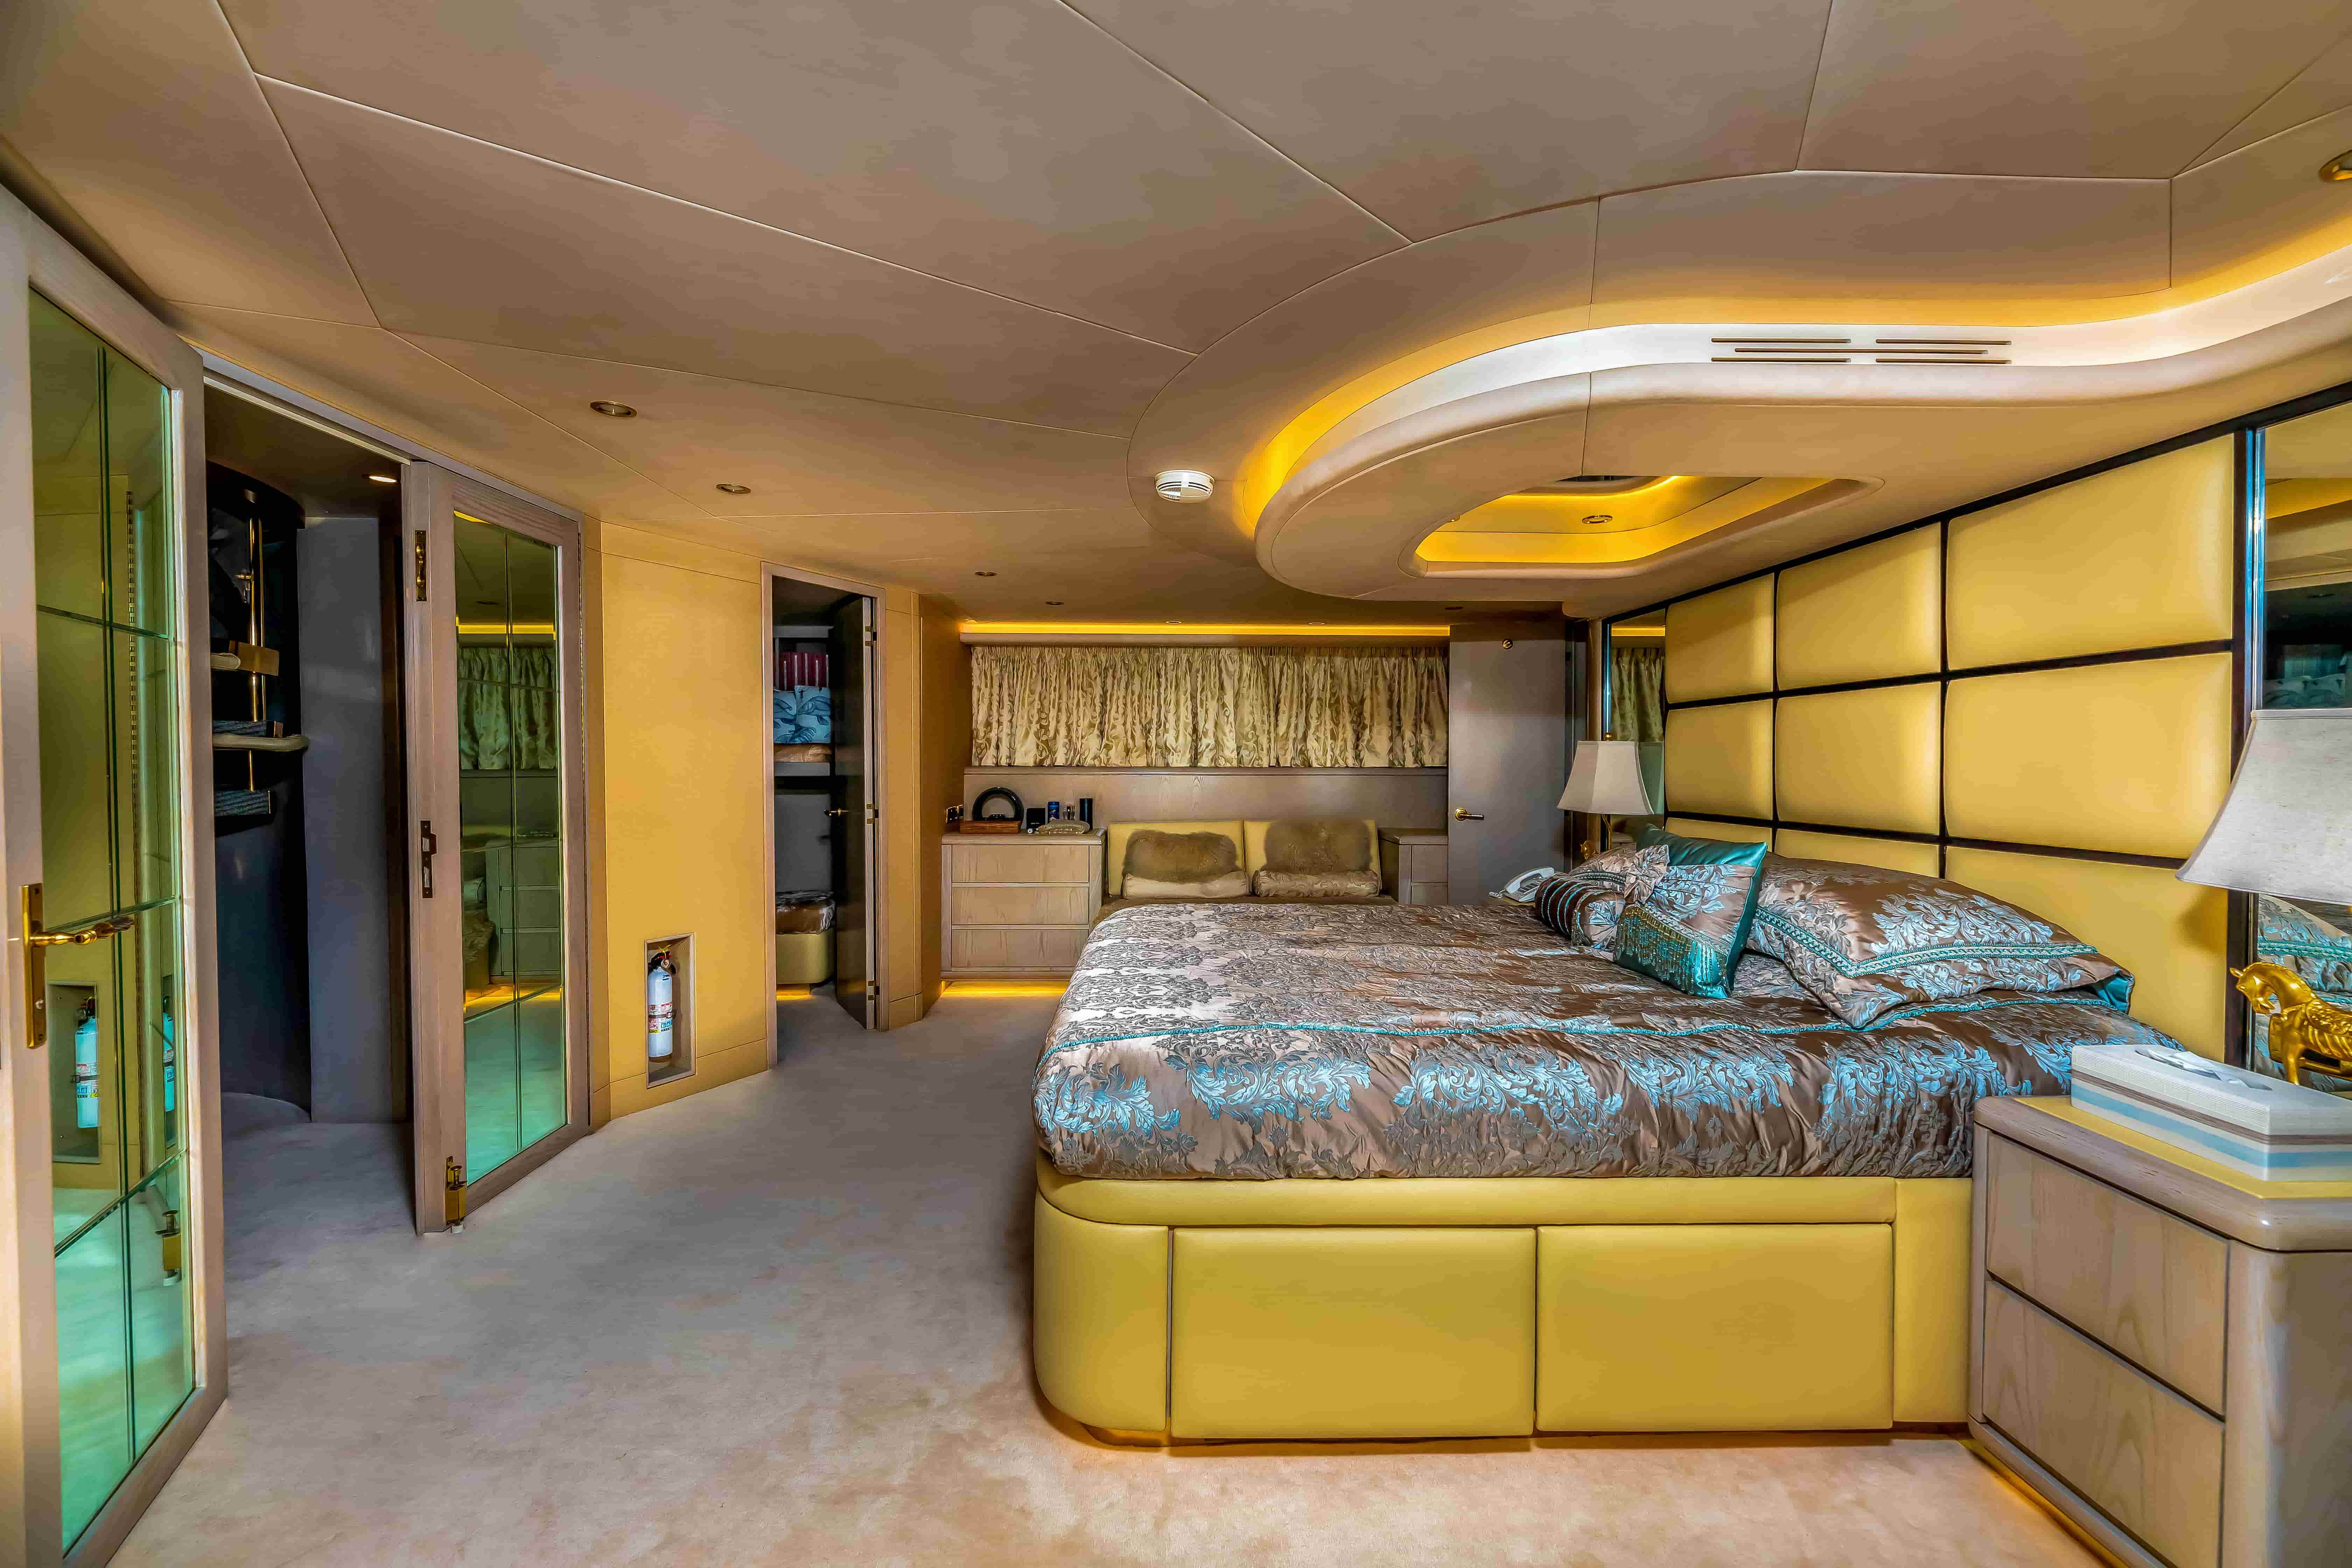 Hatteras luxury bedroom